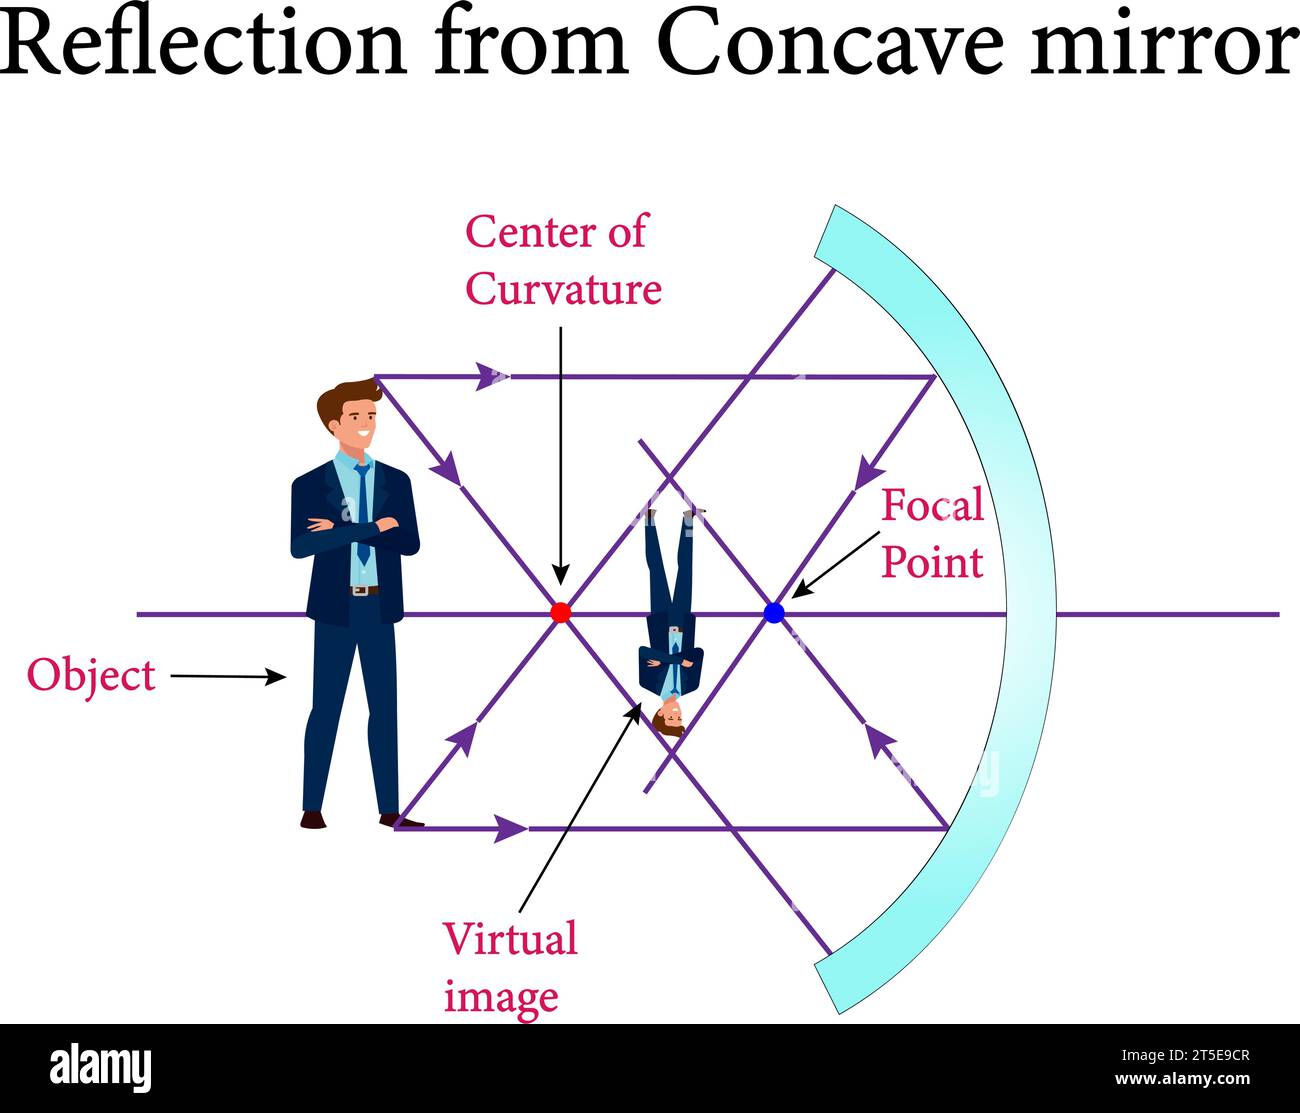 La réflexion des miroirs convexes et concaves, réflexion et miroirs sphériques, Optics.Vector illustration. Illustration de Vecteur